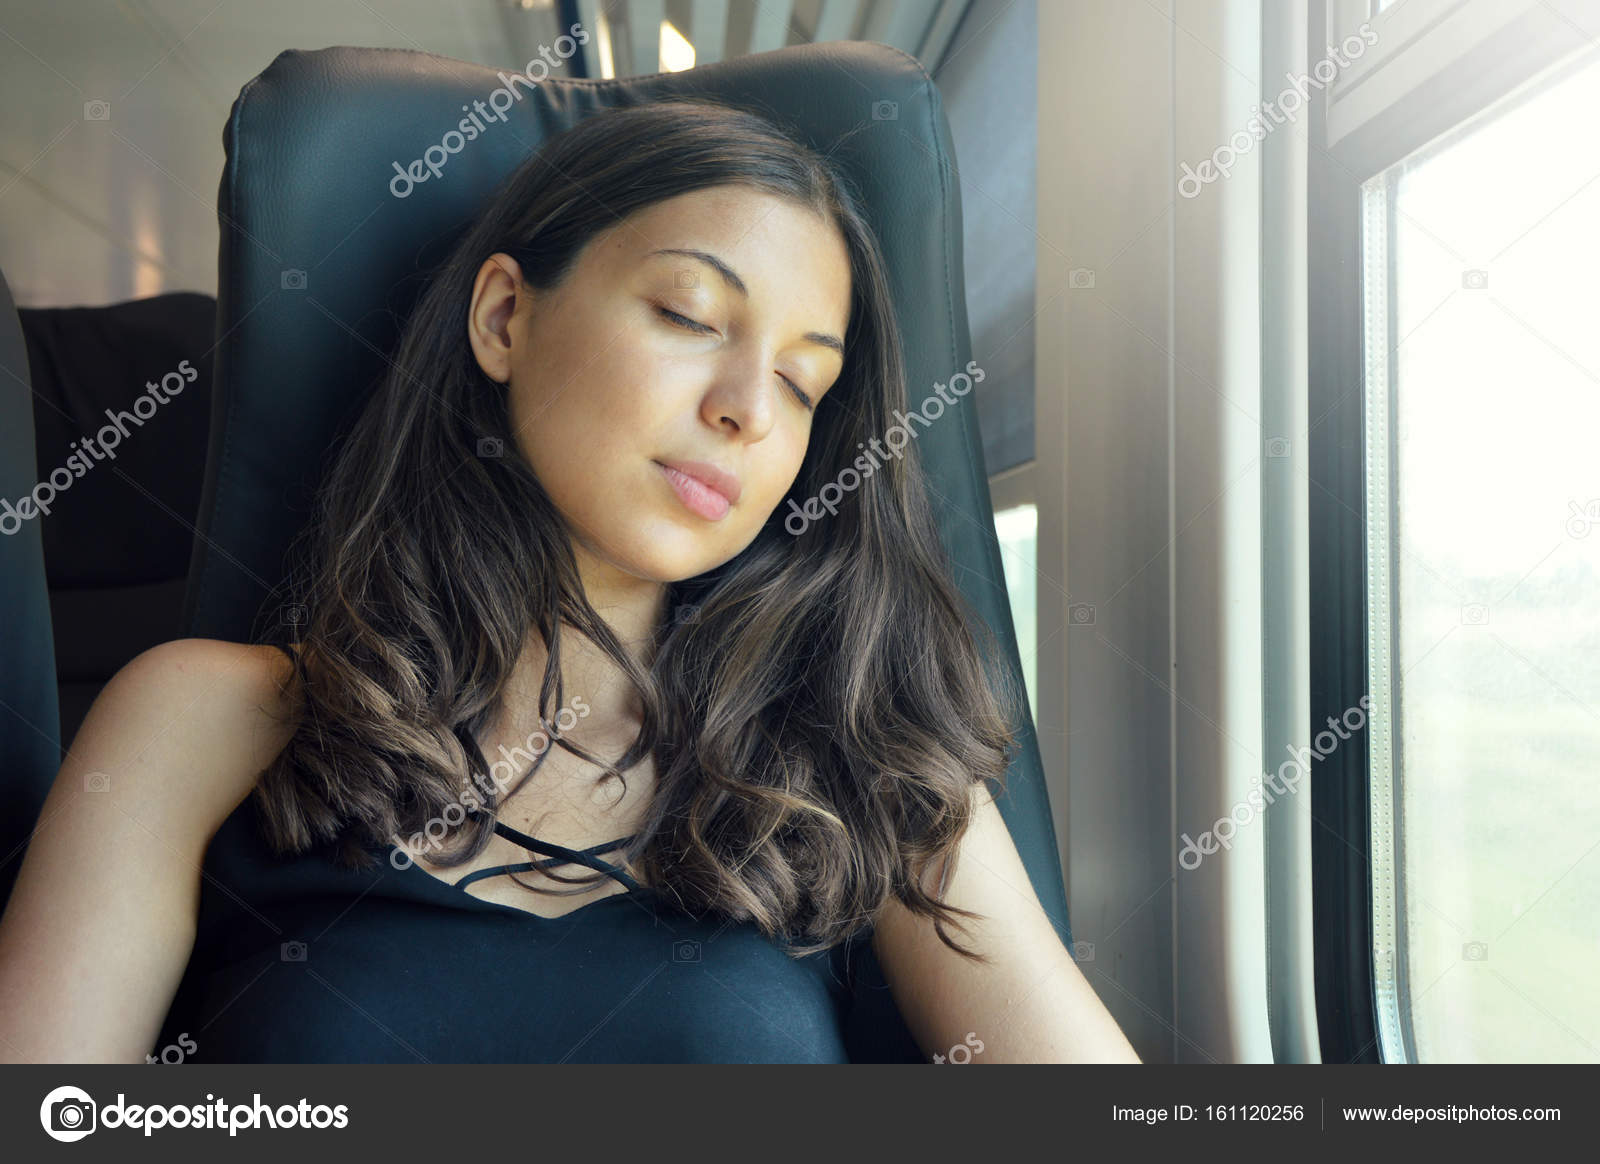 女孩 火车 车厢 睡着了 黎明 早晨 唯美 壁纸壁纸(小清新静态壁纸) - 静态壁纸下载 - 元气壁纸